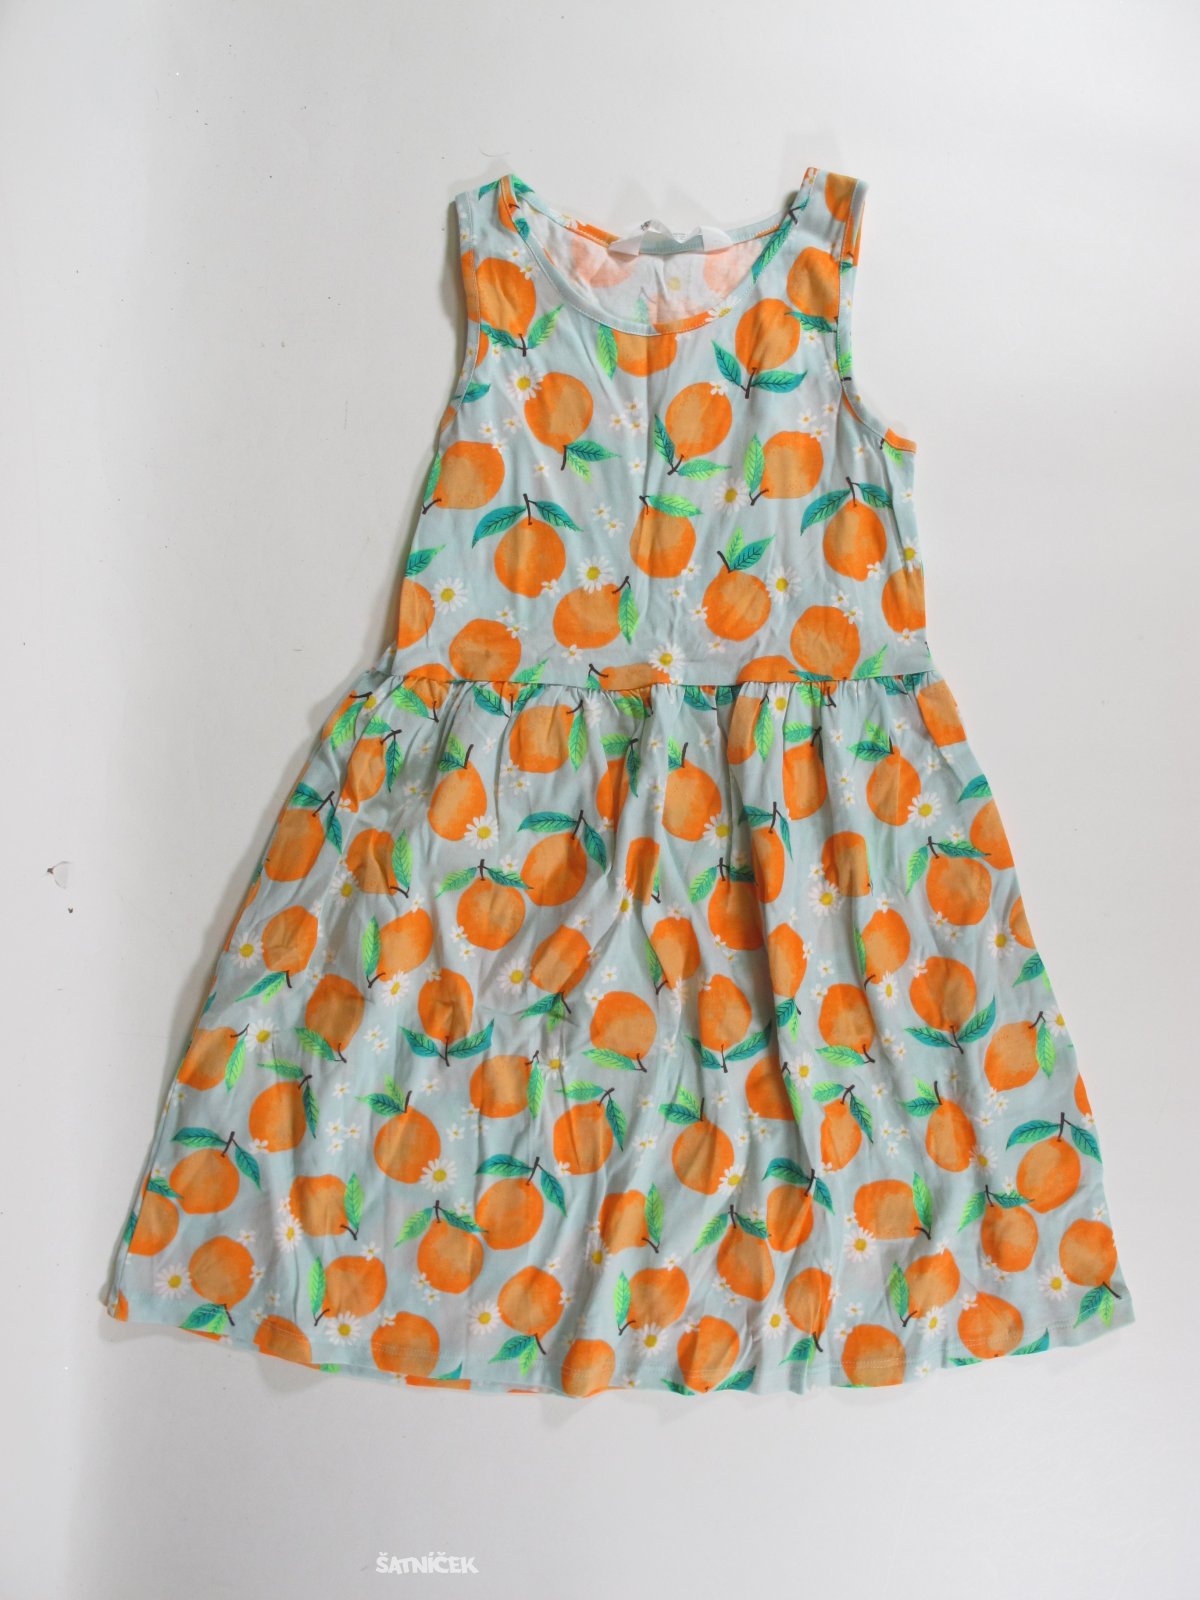 Šaty pro holky s pomerančí secondhand